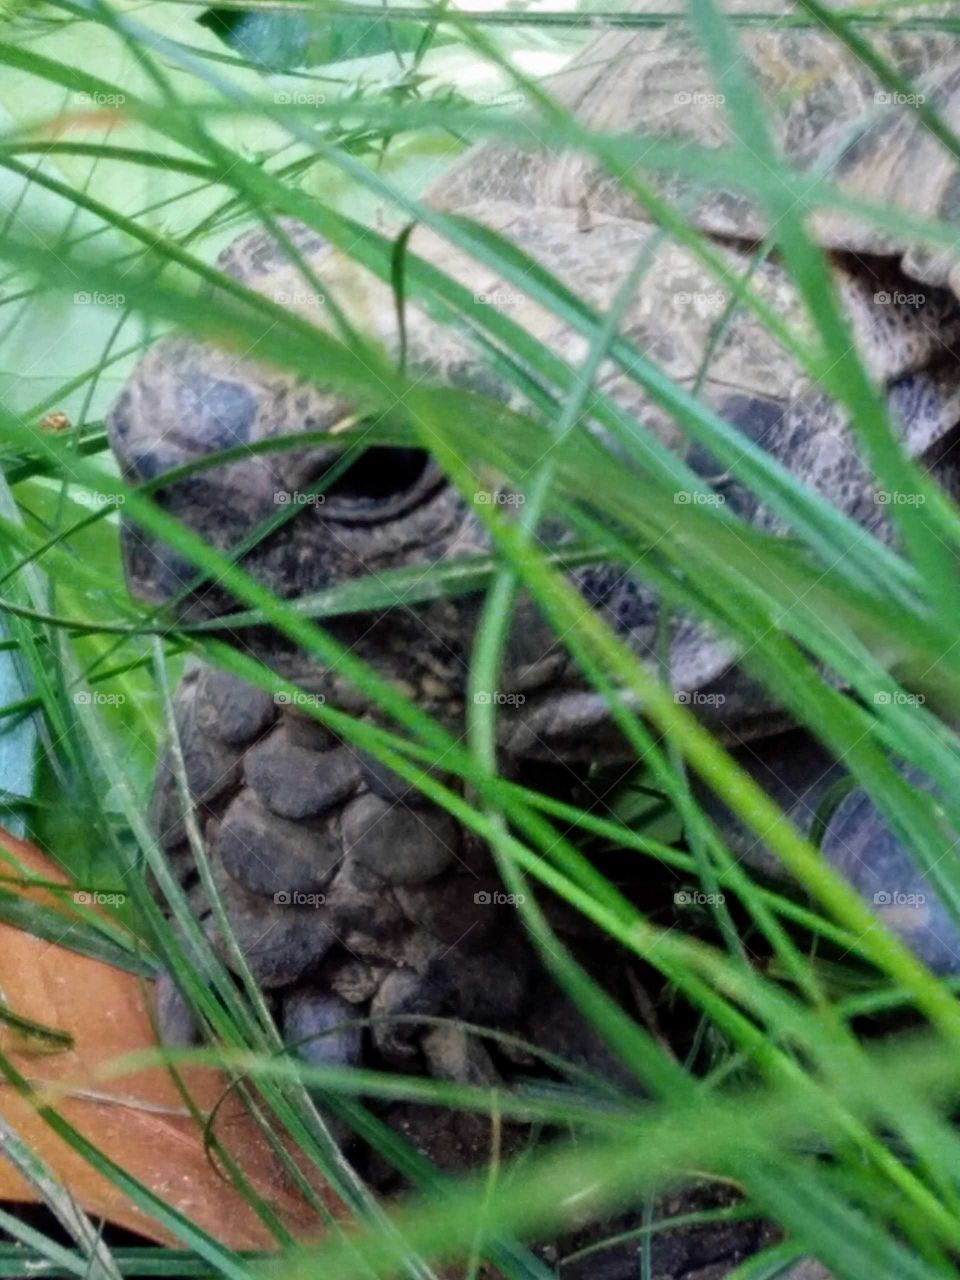 Turtle Looking around in the garden grass